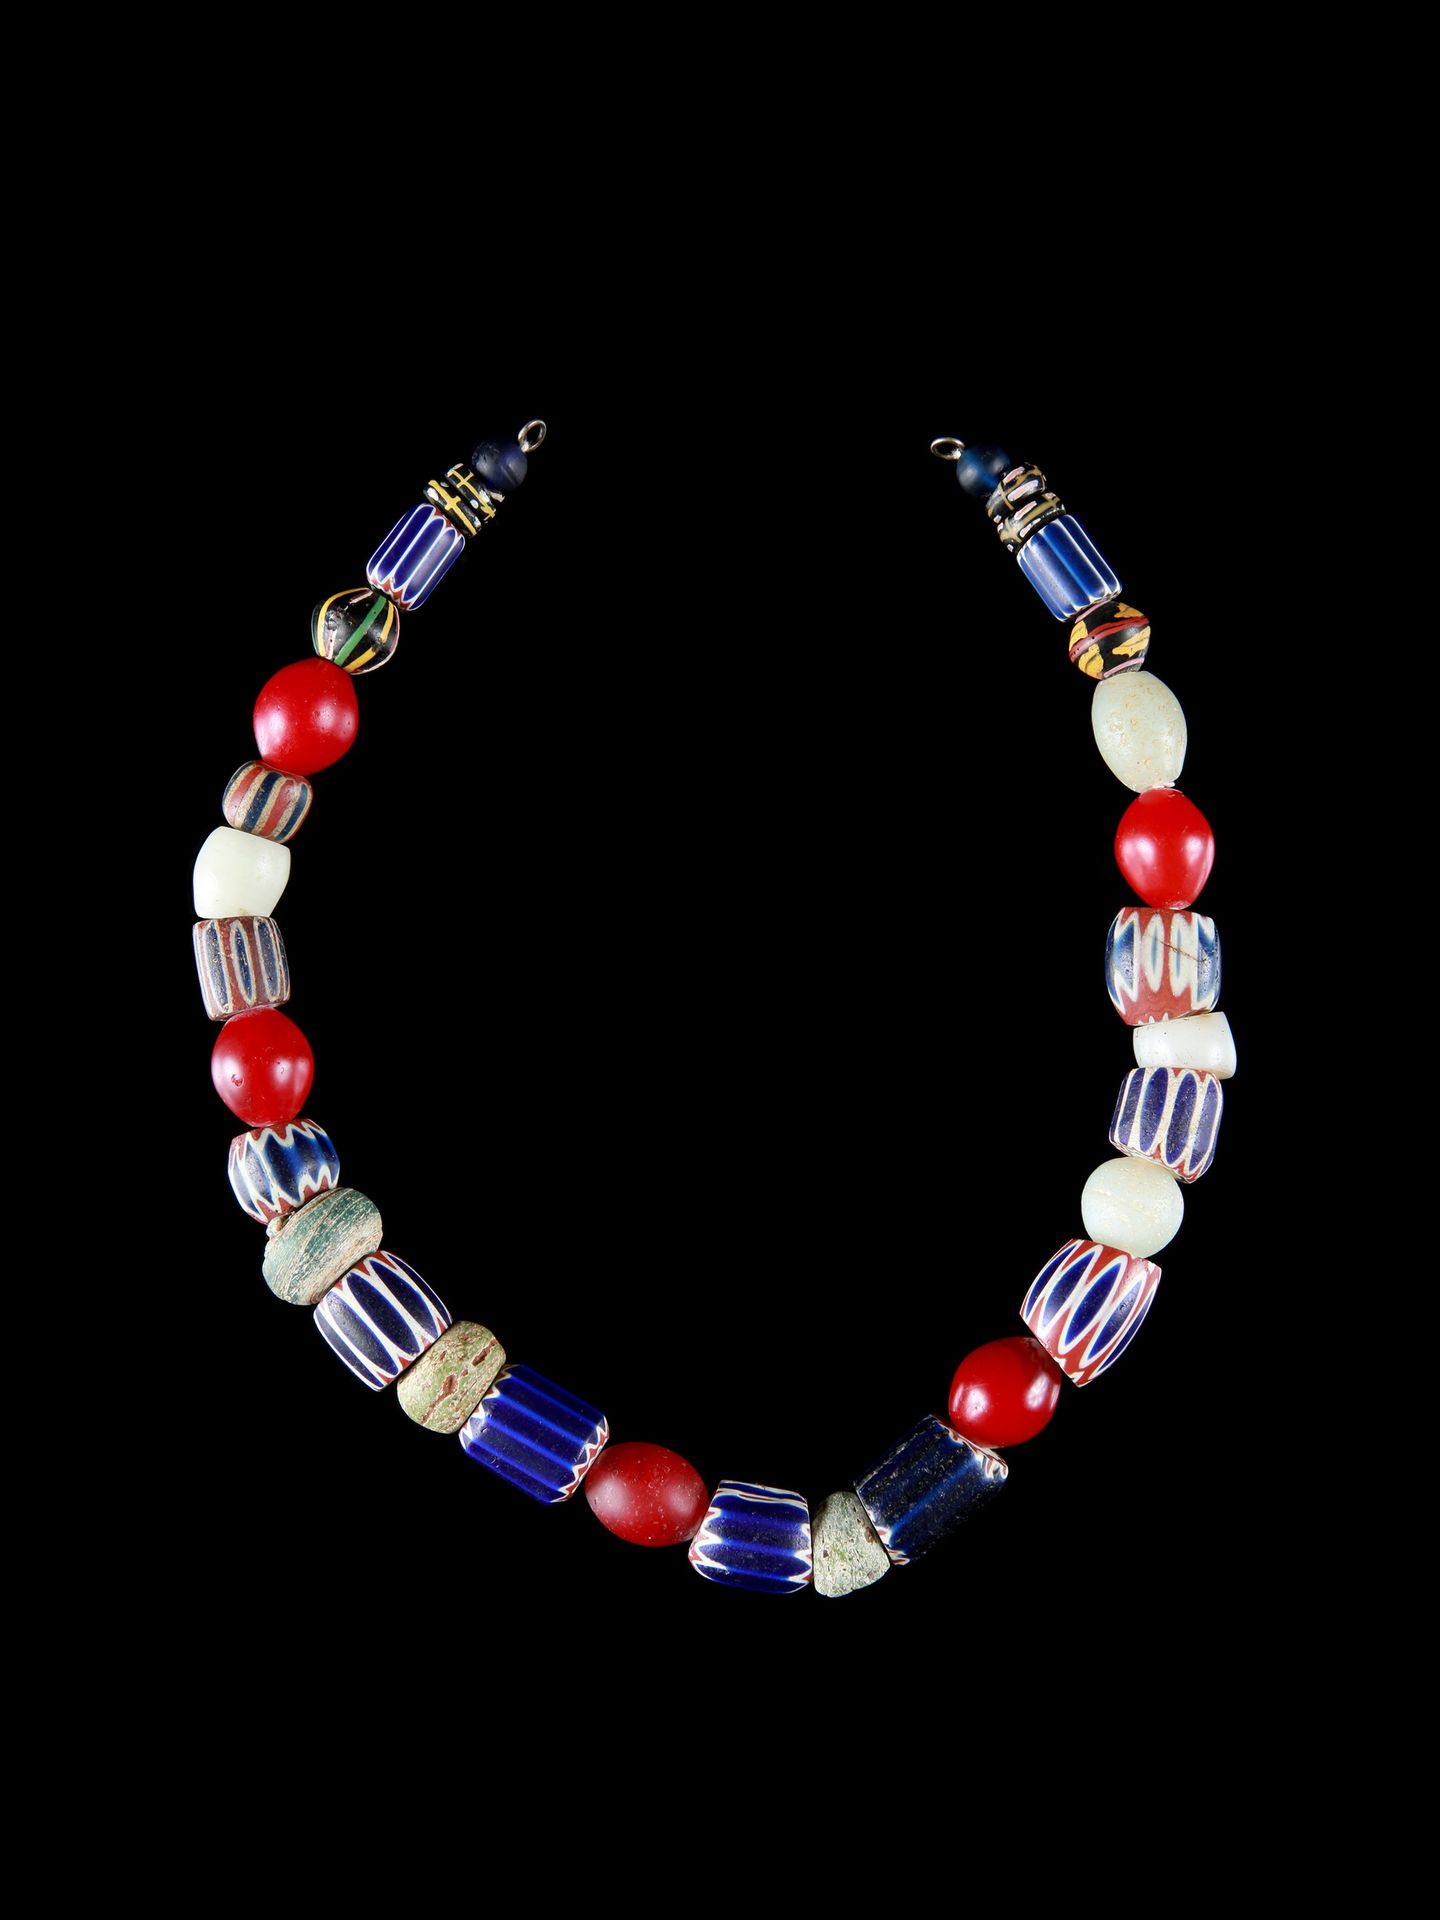 A Glass Beads Necklace Collier de perles de verre

Italie / Afrique de l'Ouest

&hellip;